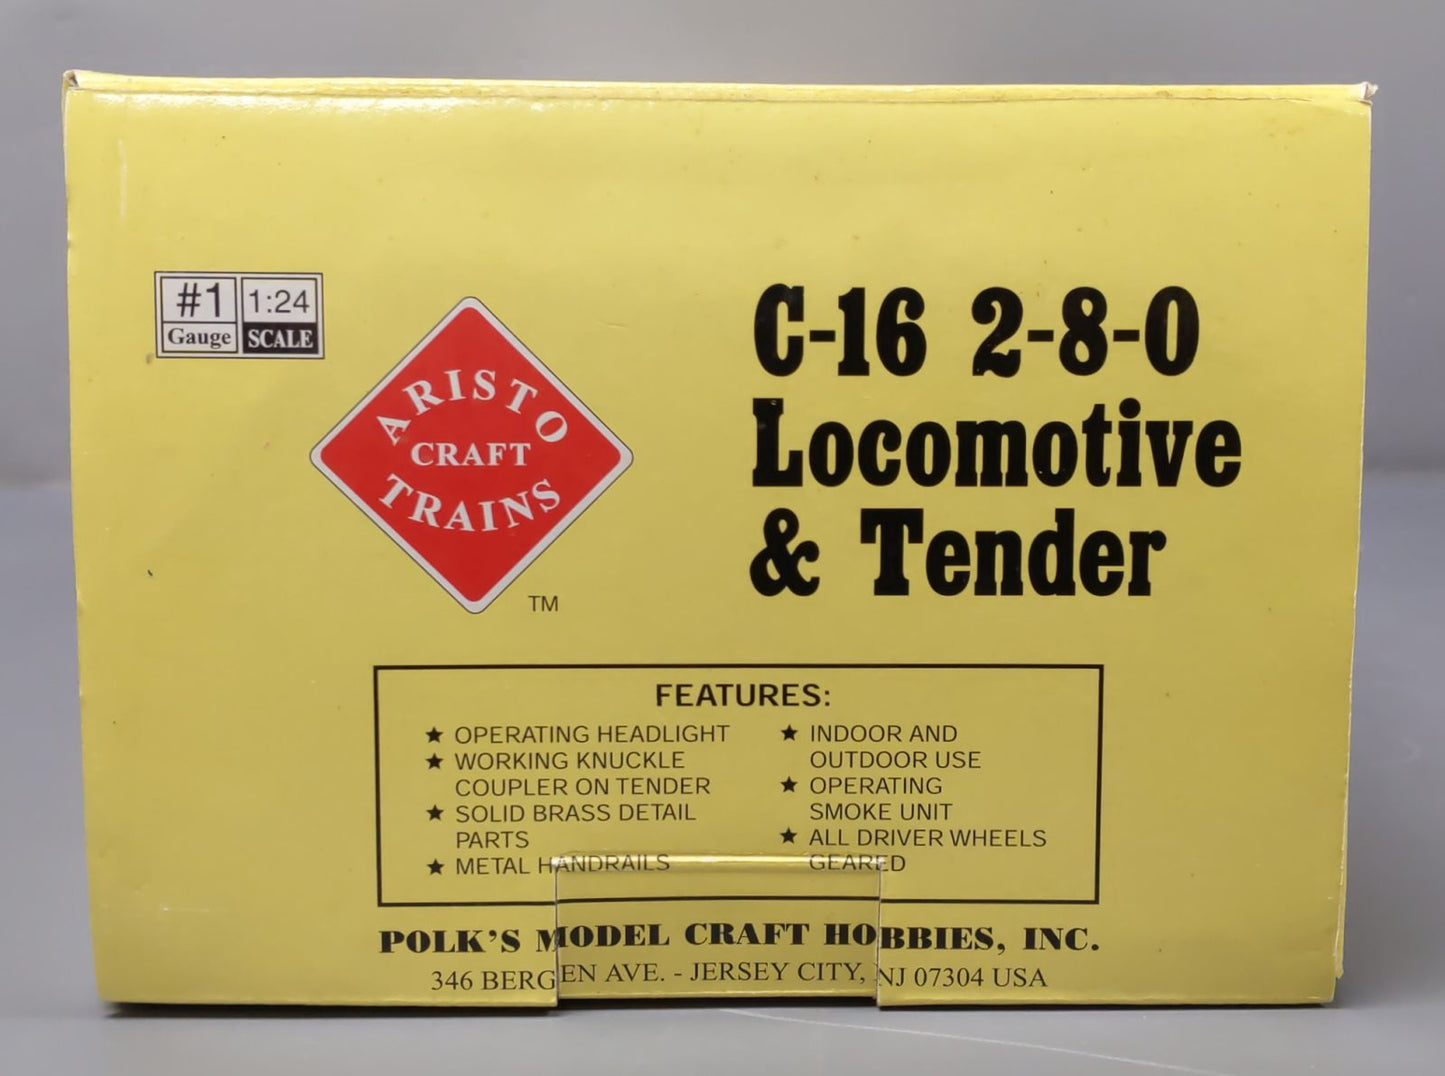 Aristo-Craft 80209 G Scale Pennsylvania C16 Locomotive & Tender EX/Box